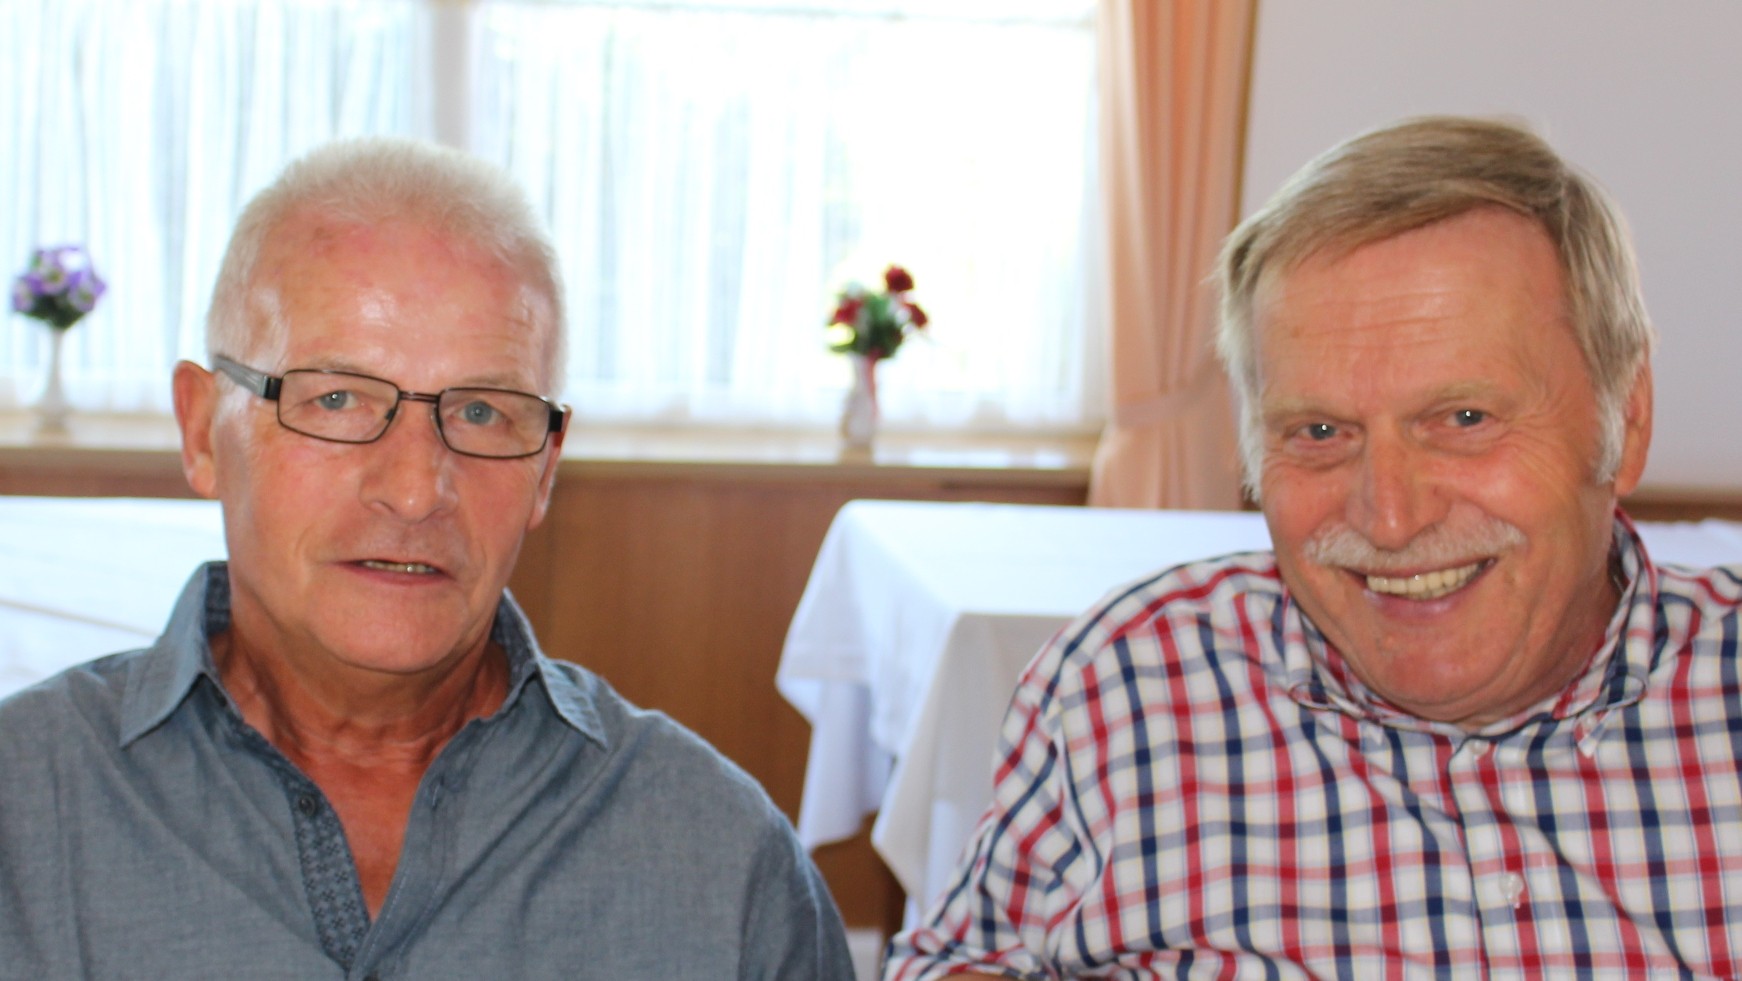 Einst spielten sie zusammen beim SV Arminia Hannover. Sie trafen sich am 7. Juli beim Freundeskreis: Dieter Schrader (li.) & Eckhard Koss  